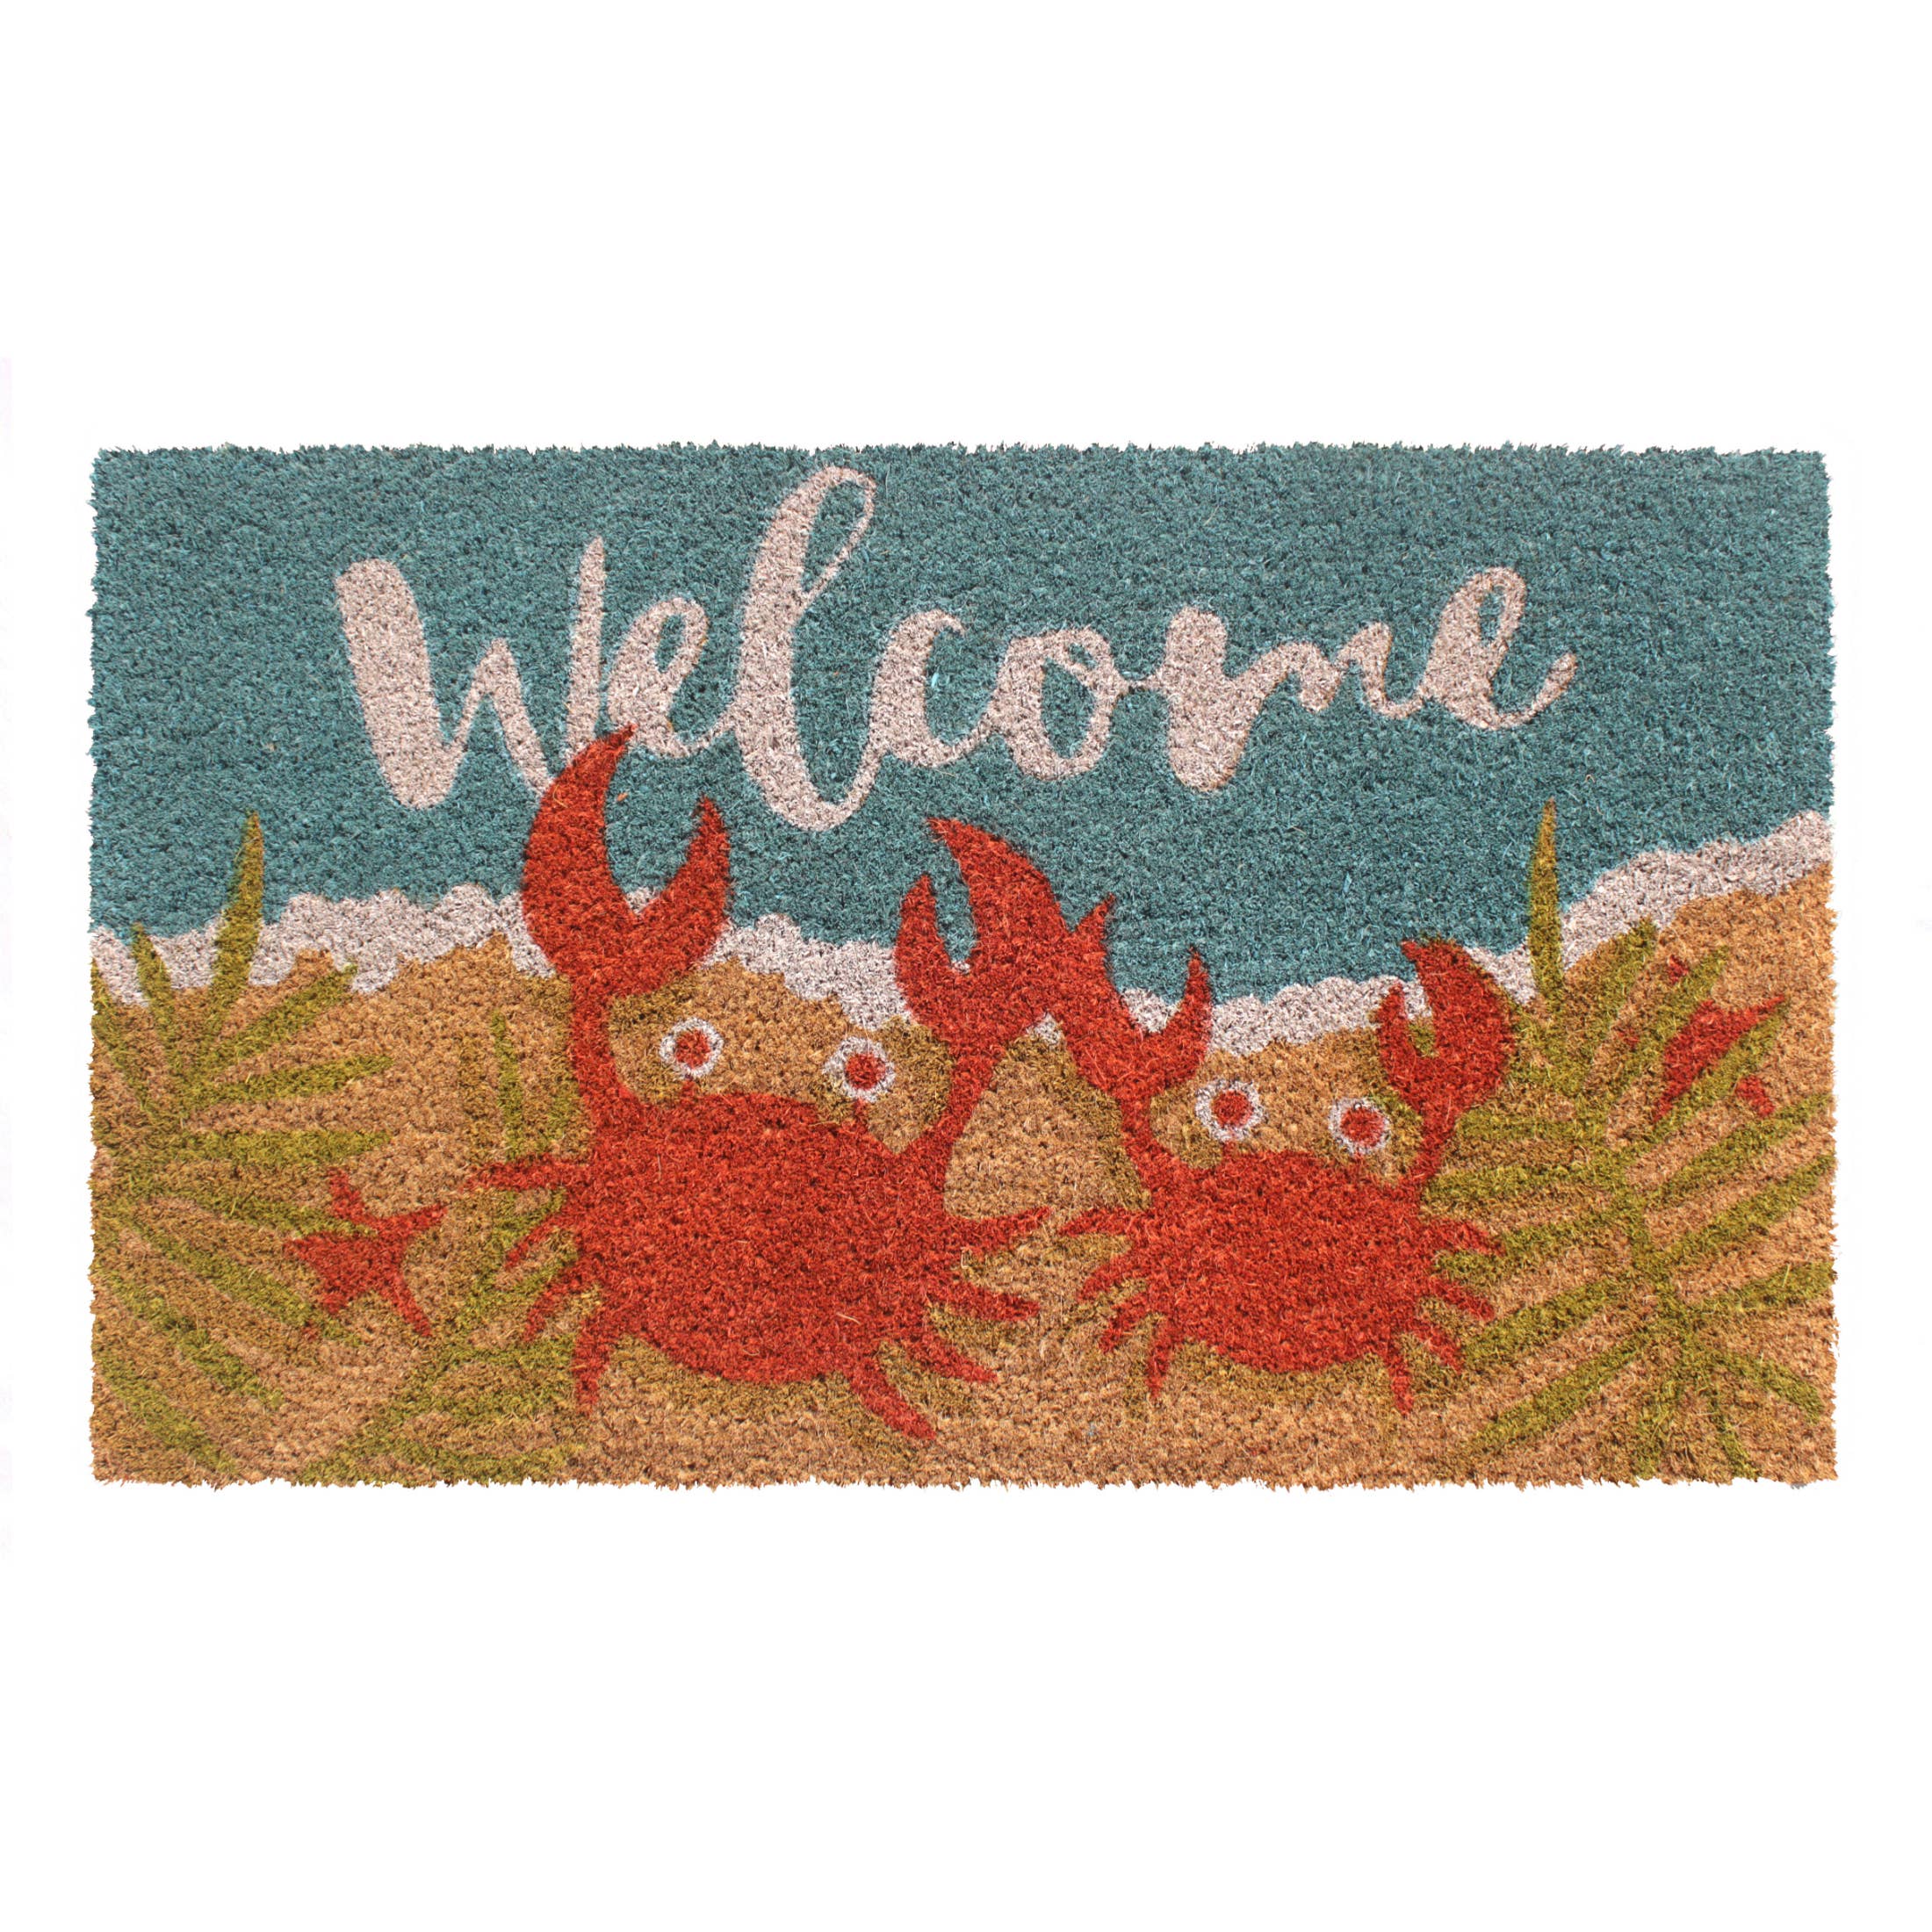 Doormat - Welcome Crabs 18"x30" Rug